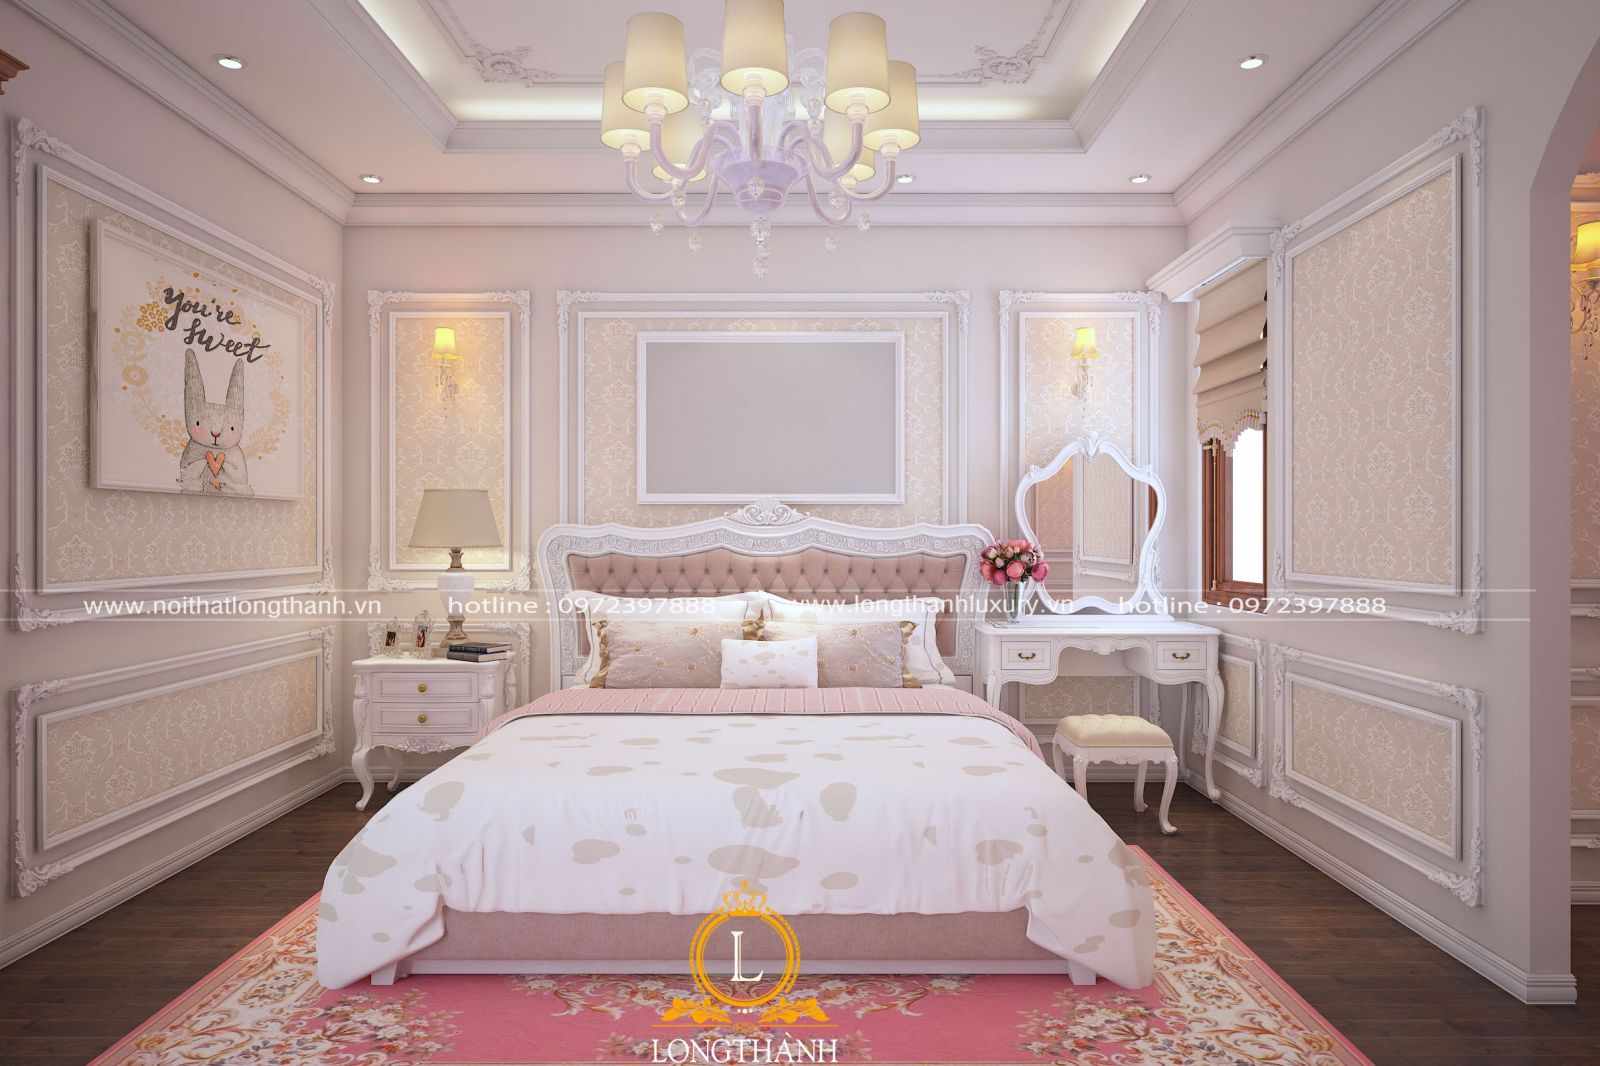 Căn phòng ngủ đẹp với gam màu trắng hồng cũng được nhiều quý cô yêu thích